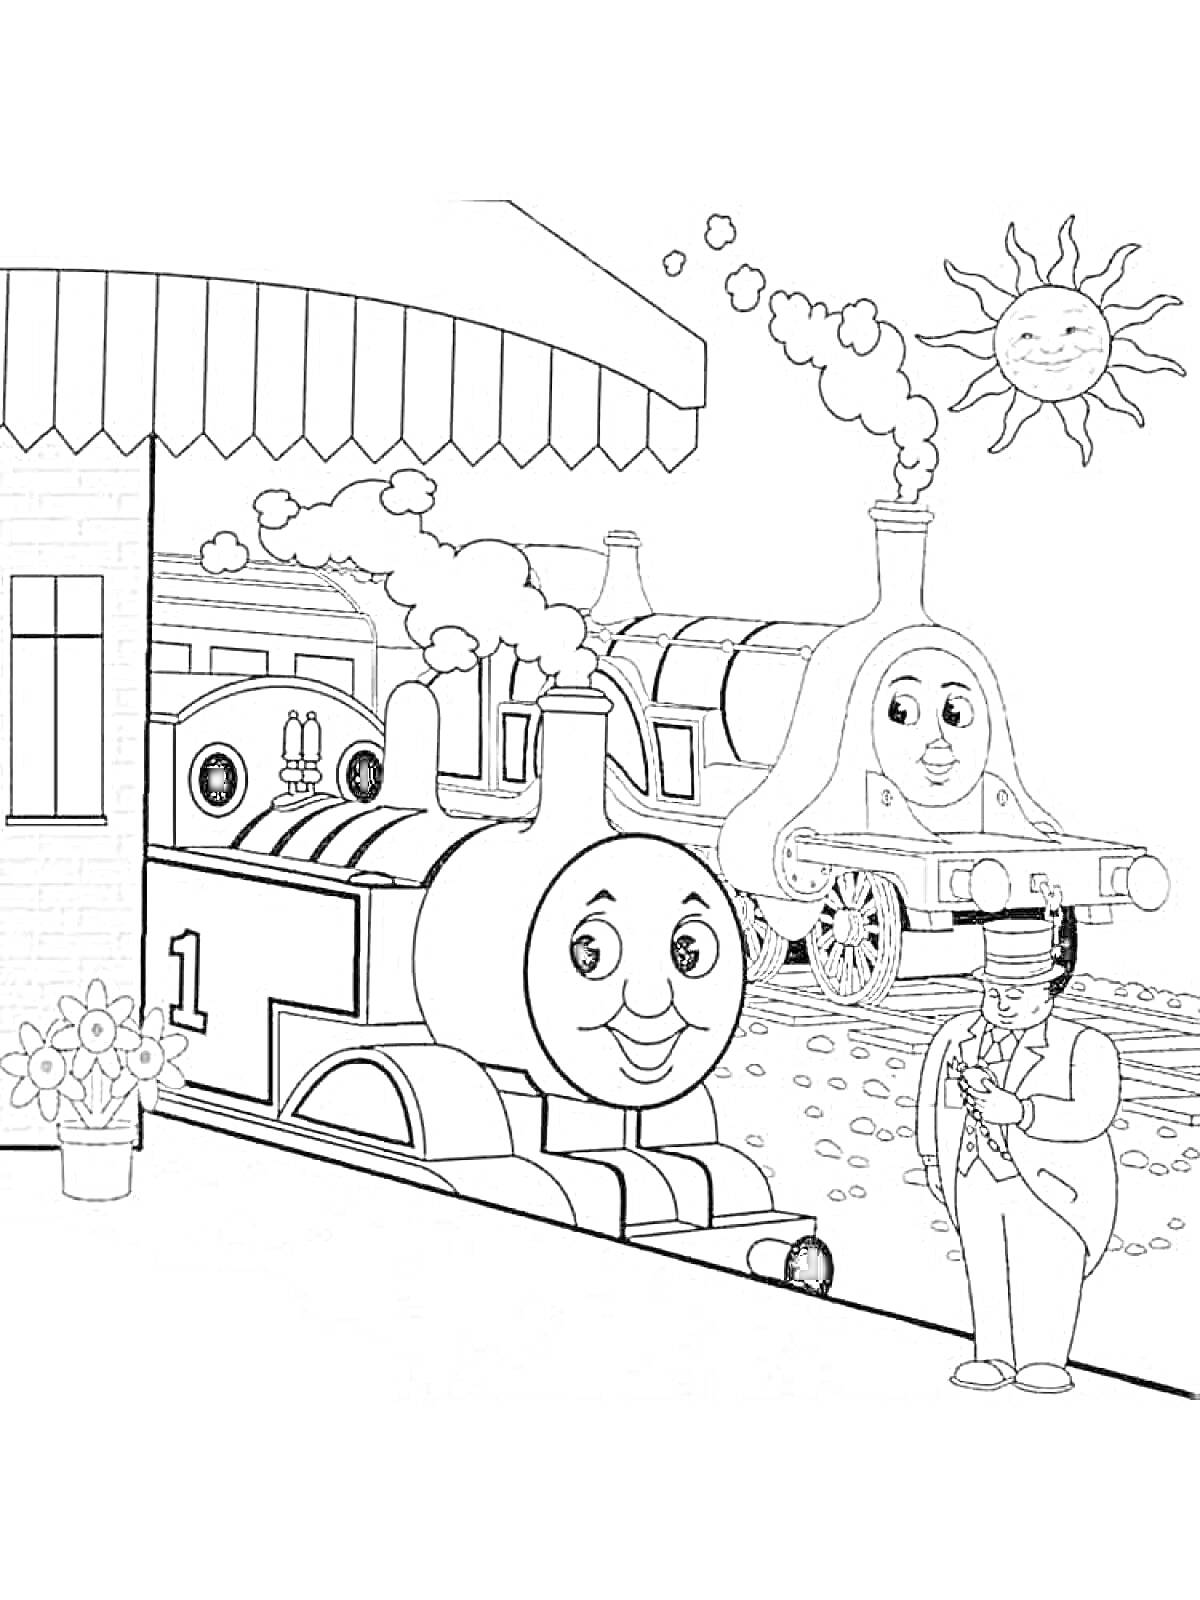 Паровозик Томас, другие паровозики, человек-смотритель на перроне, здание вокзала, цветочный горшок, солнце